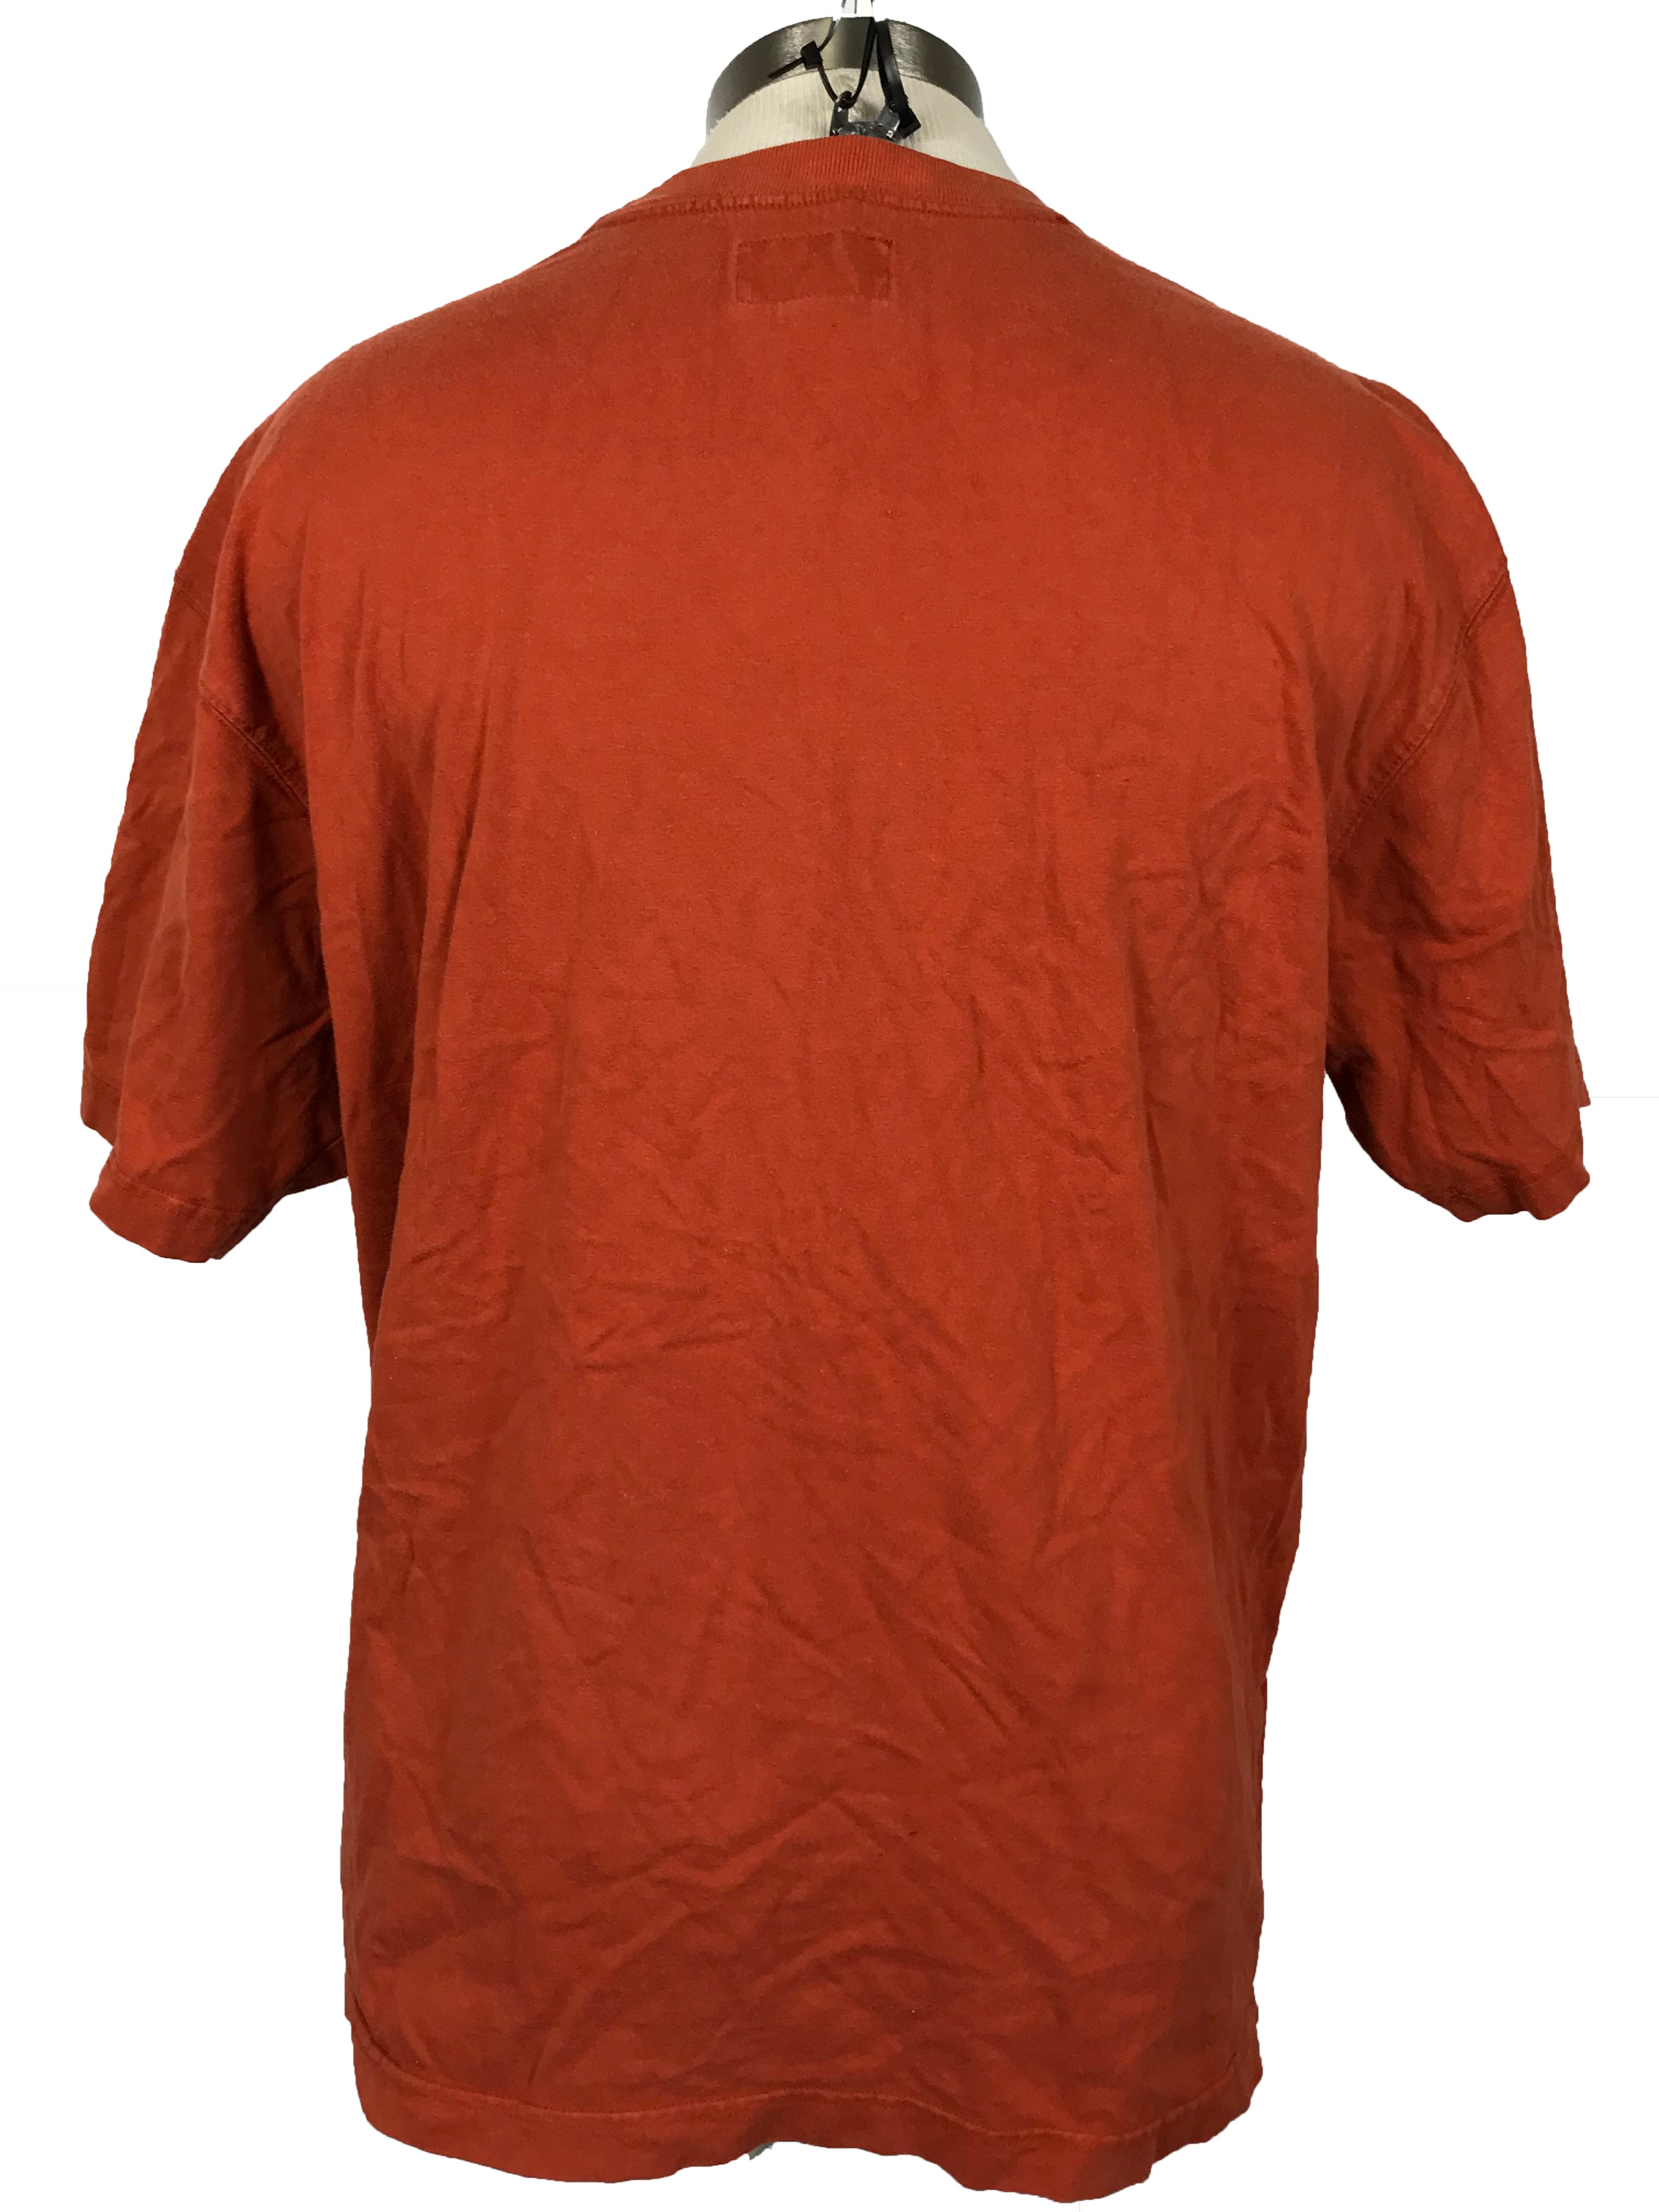 Abercrombie & Fitch Orange T-Shirt Men's Size XL